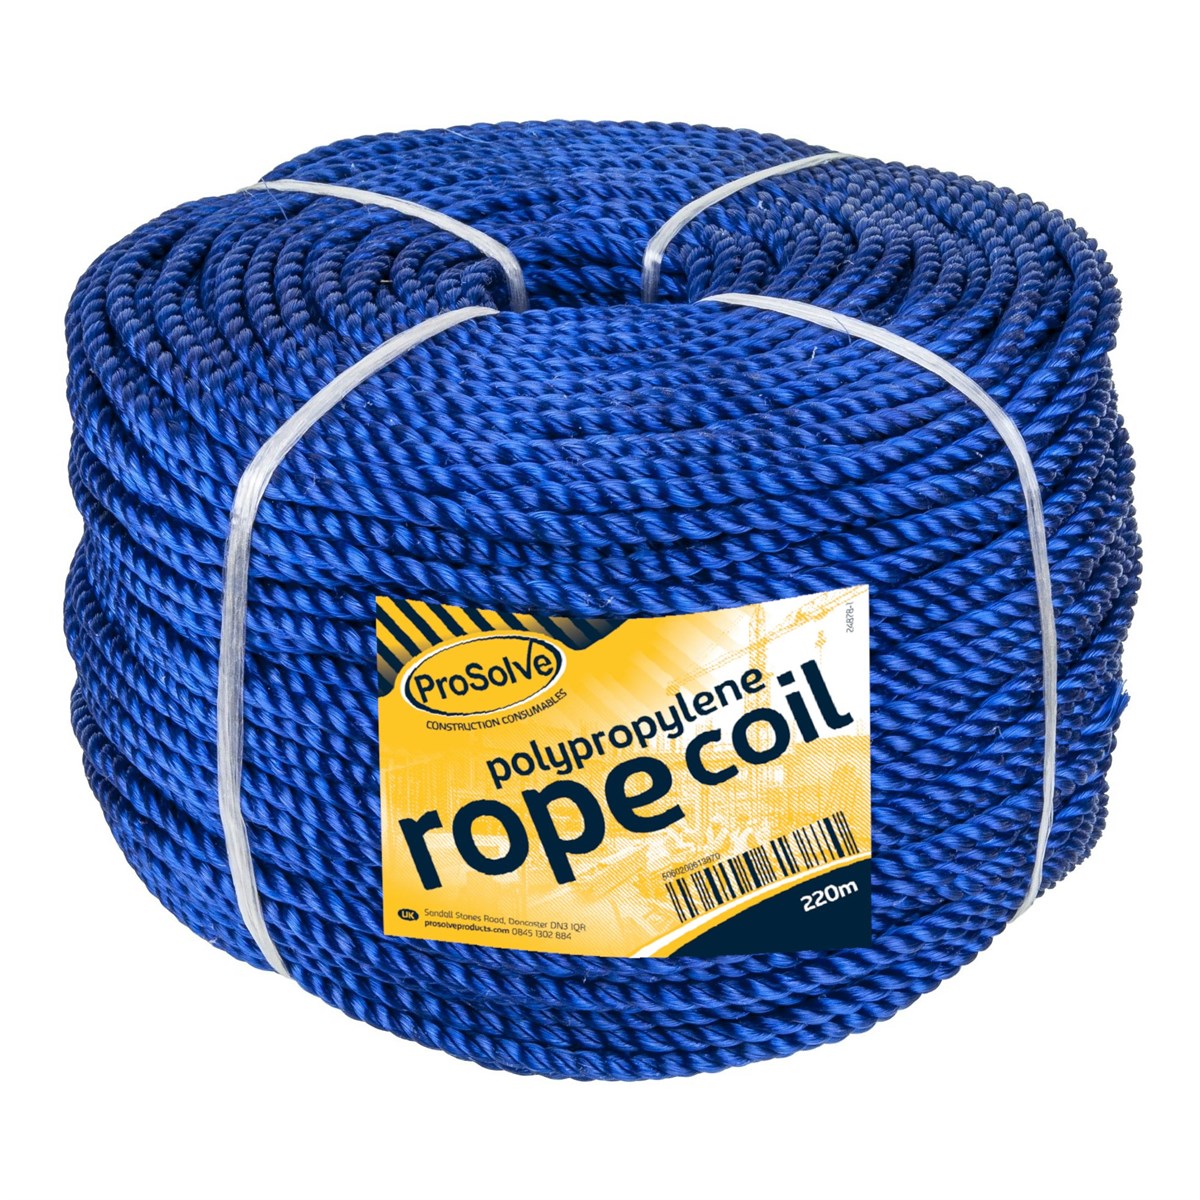 Rope 10mmx220m